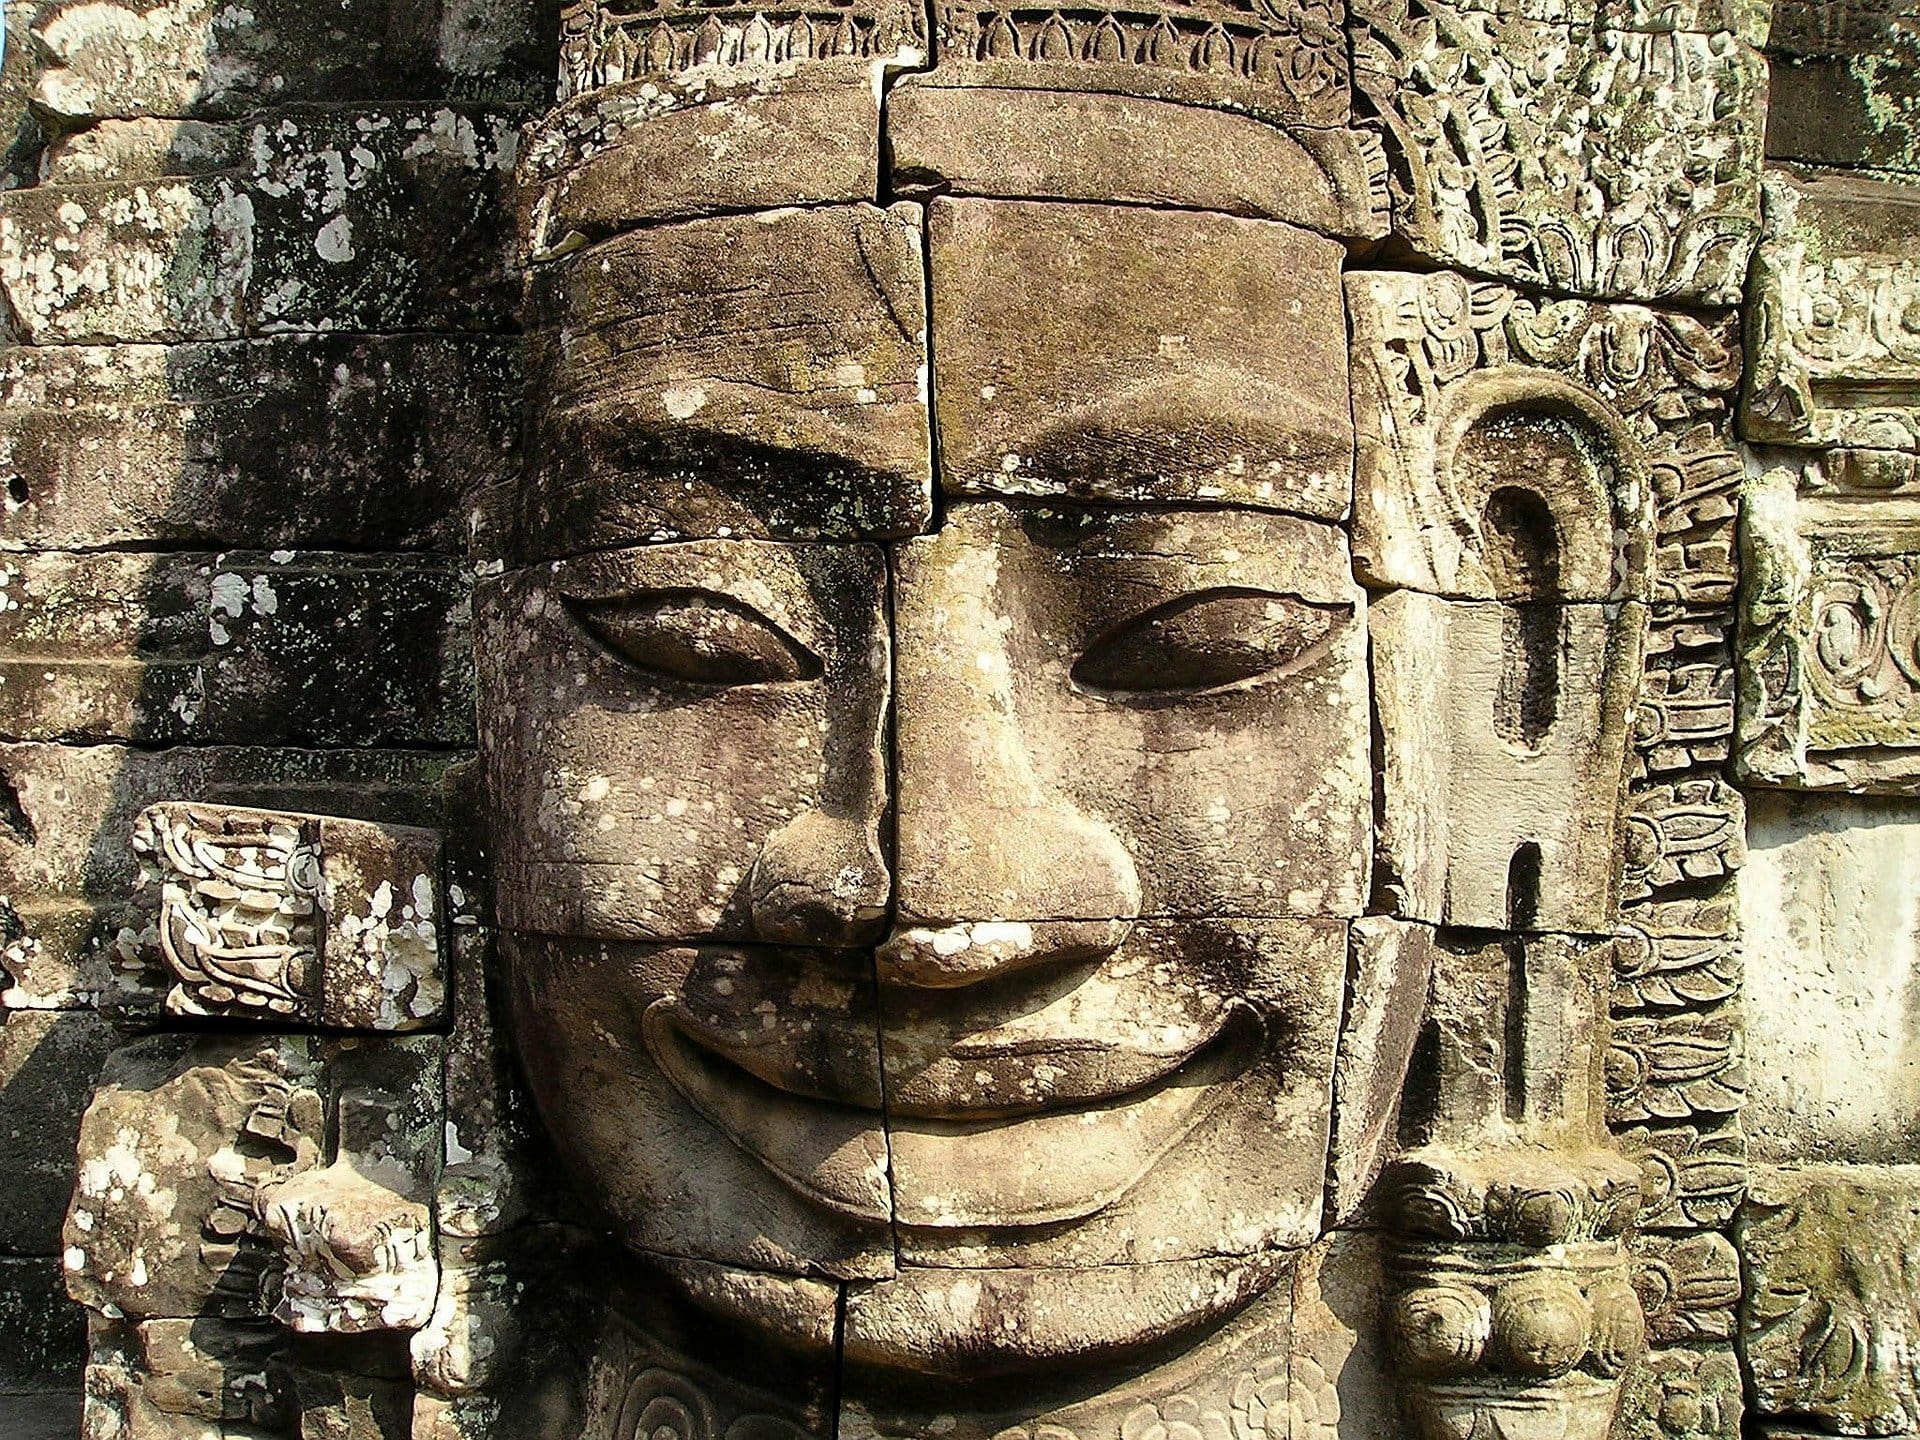 Cambogia Angkor